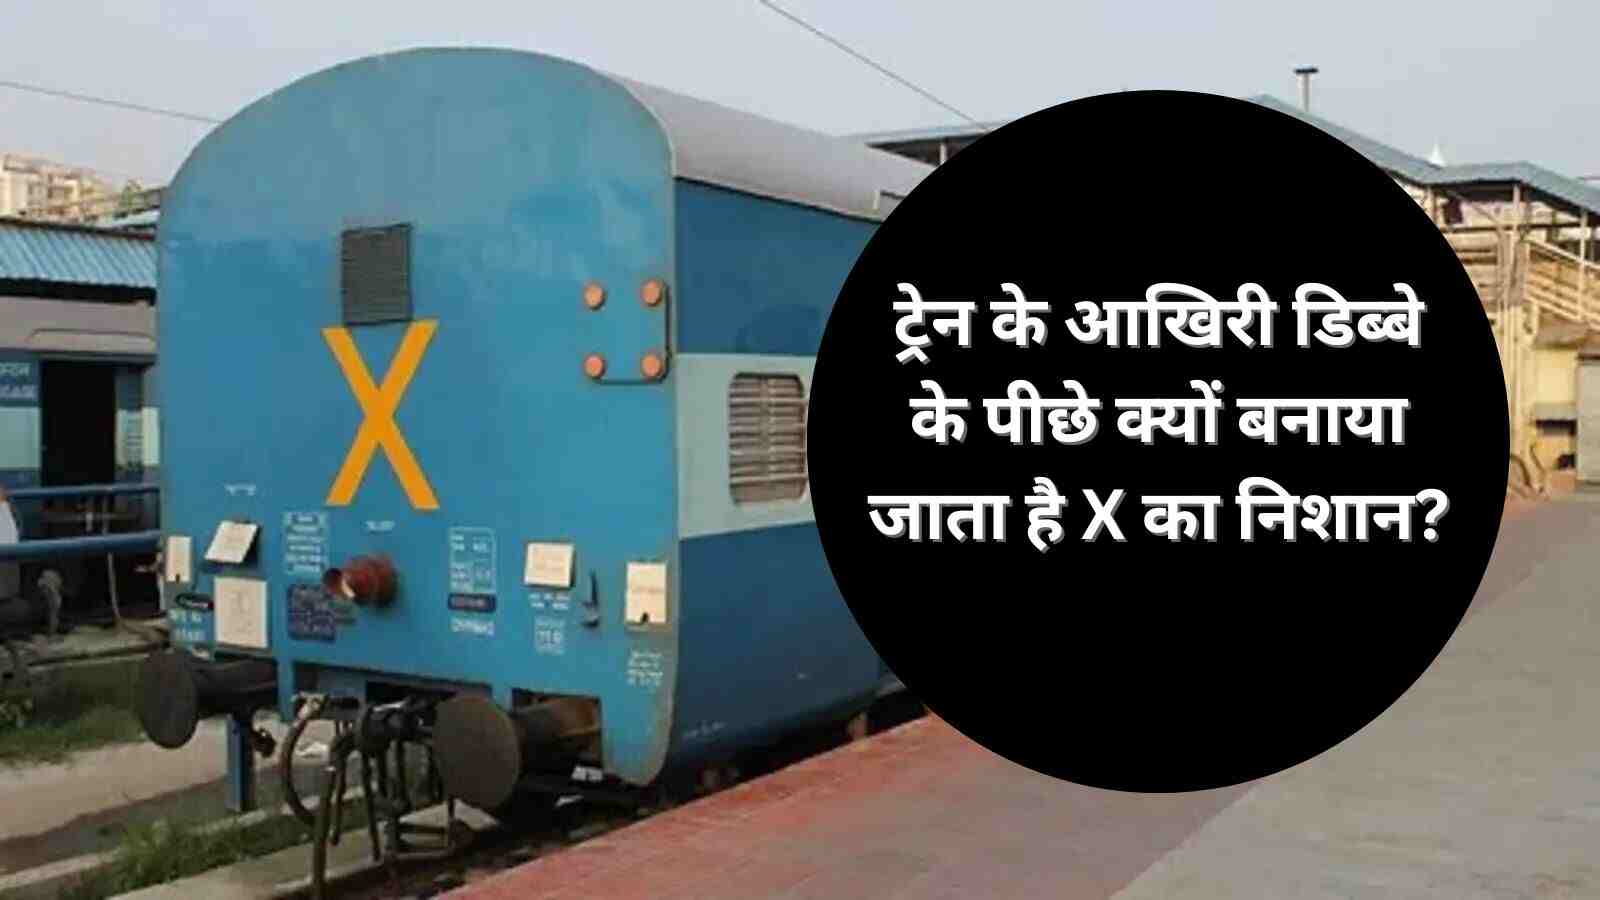 Indian Railway ट्रेन के आखिरी डिब्बे के पीछे क्यों बनाया जाता है X का निशान जानिए क्या है इसका मतलब